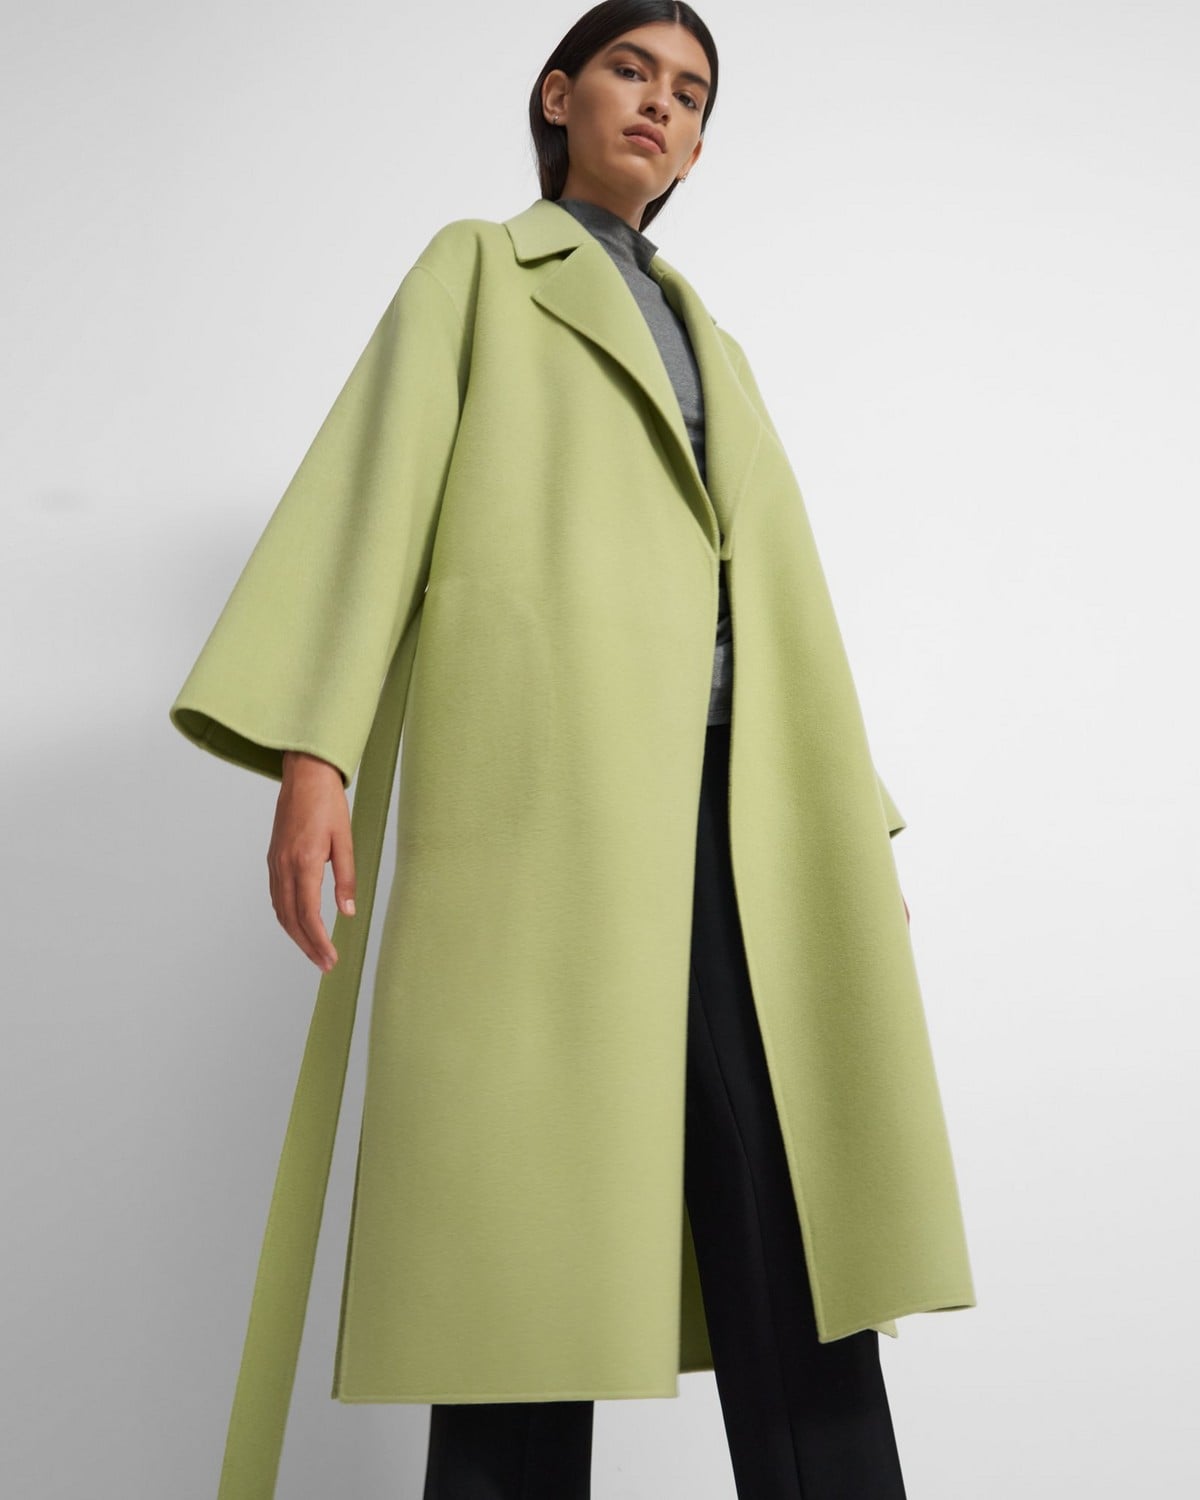 띠어리 랩 코트 Theory Wrap Coat in Double-Face Wool-Cashmere,PALE LIME